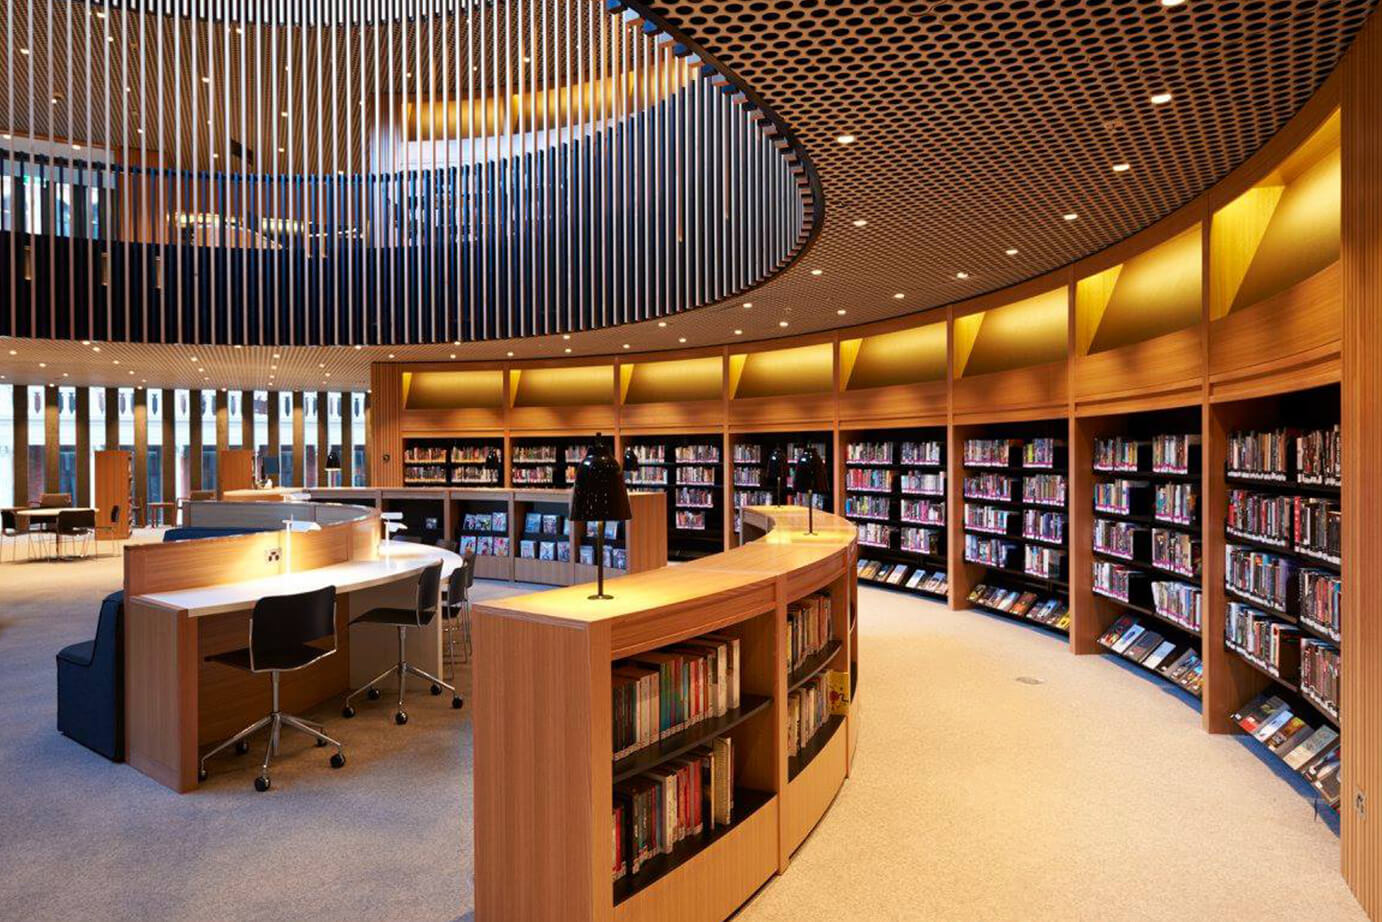 Library itl. Библиотека Японии читальный зал. Йельский университет библиотека. Современная библиотека. Интерьер современной библиотеки.